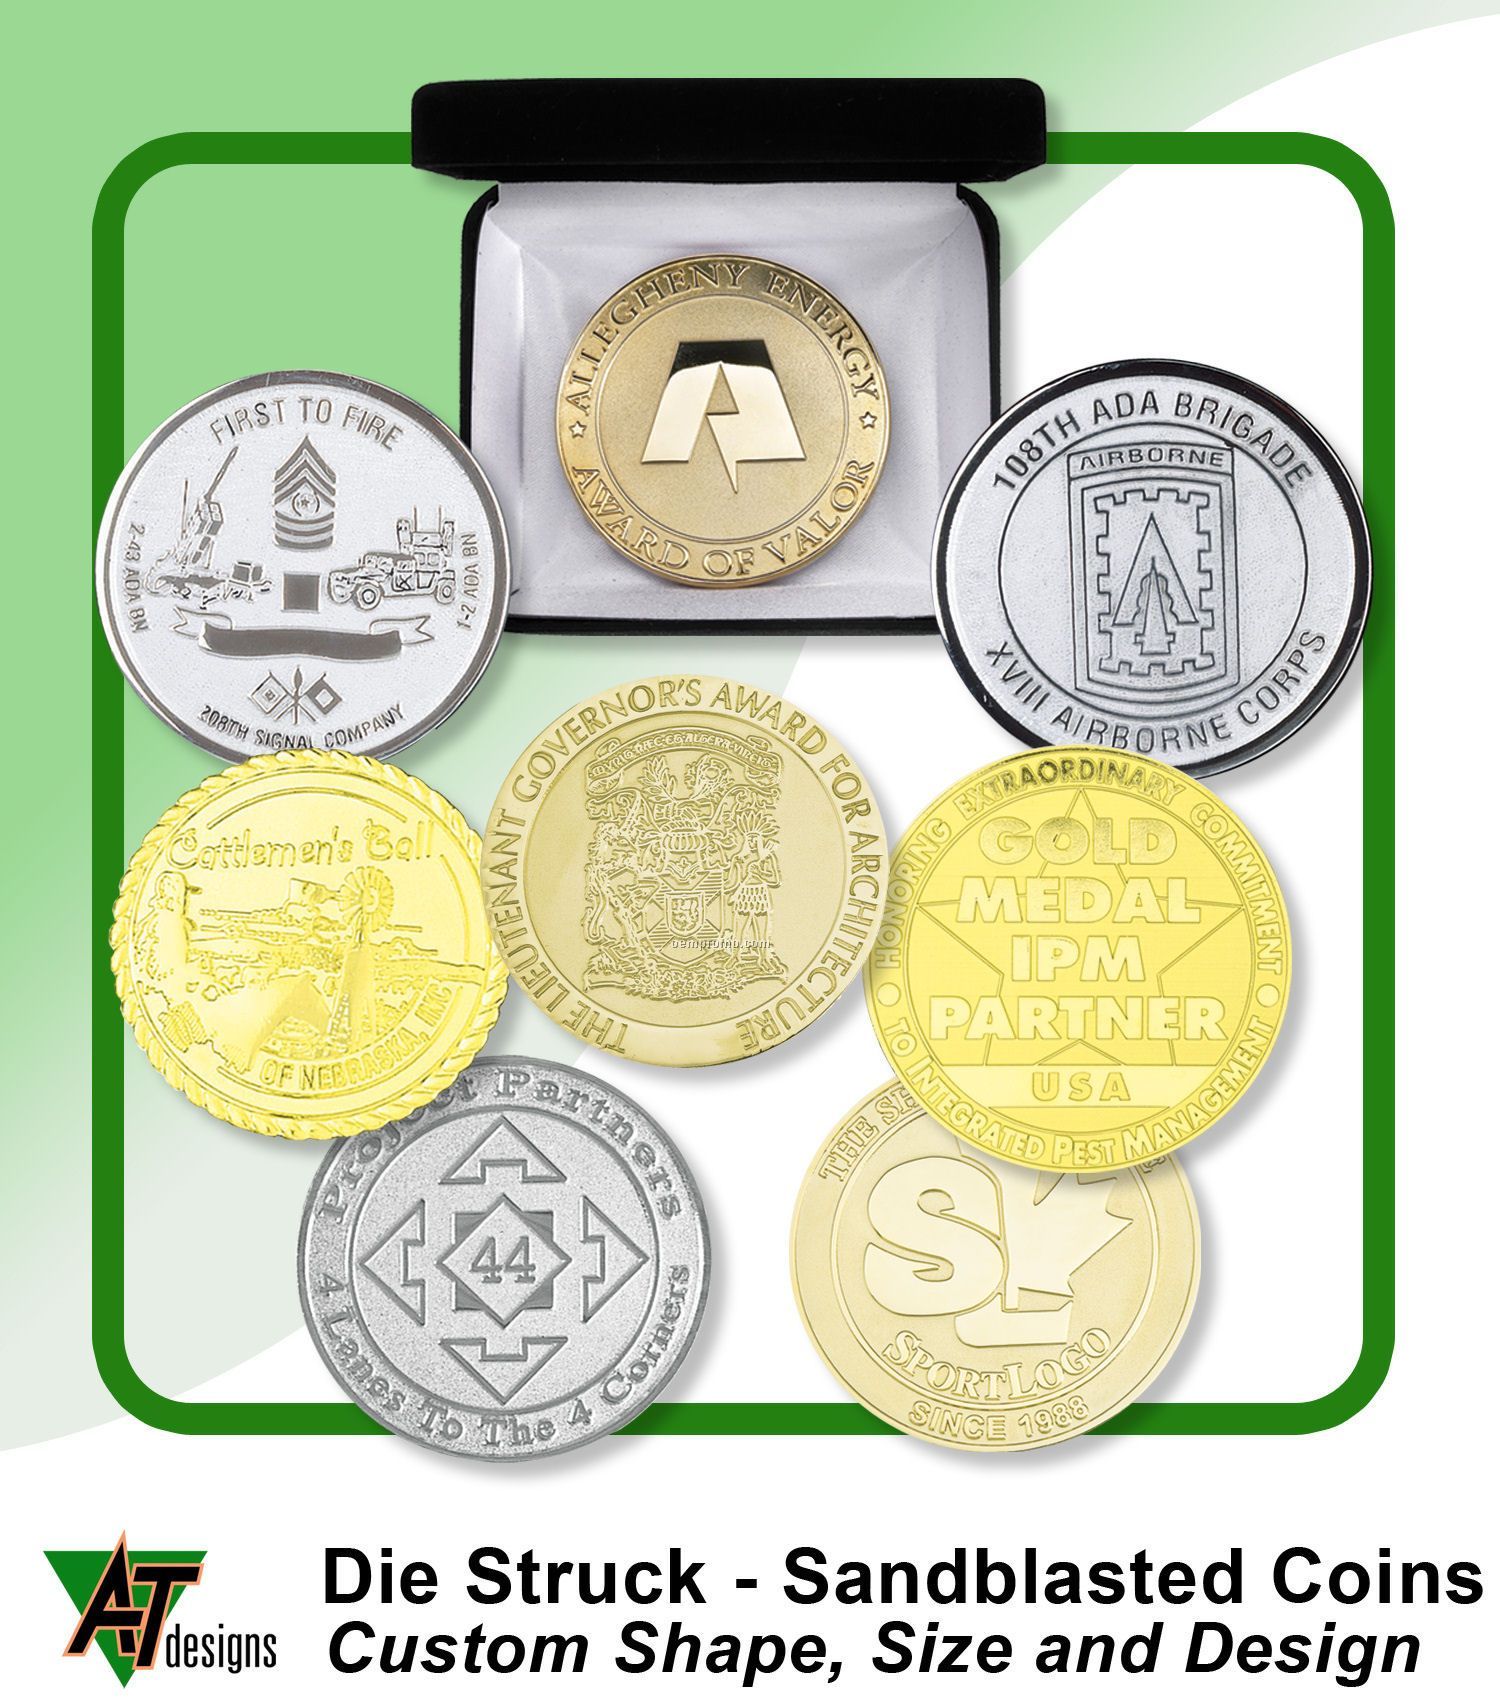 Die Struck Coins 1-3/4